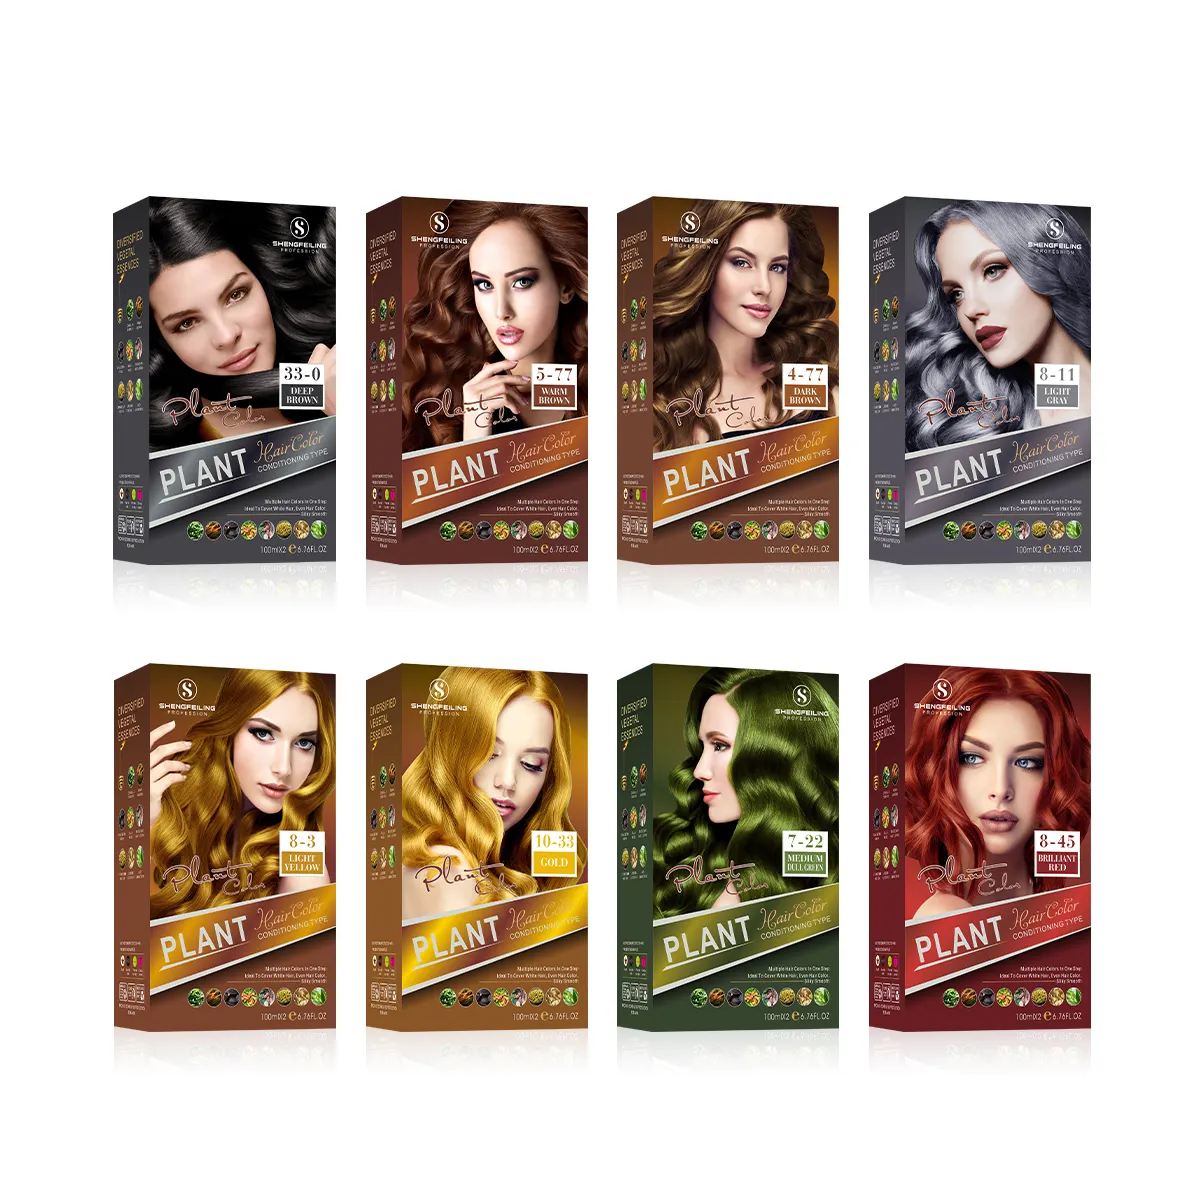 Productos profesionales para teñir el cabello de fábrica, 53 colores populares, color crema para el cabello, tinte para el cabello para salón y uso doméstico